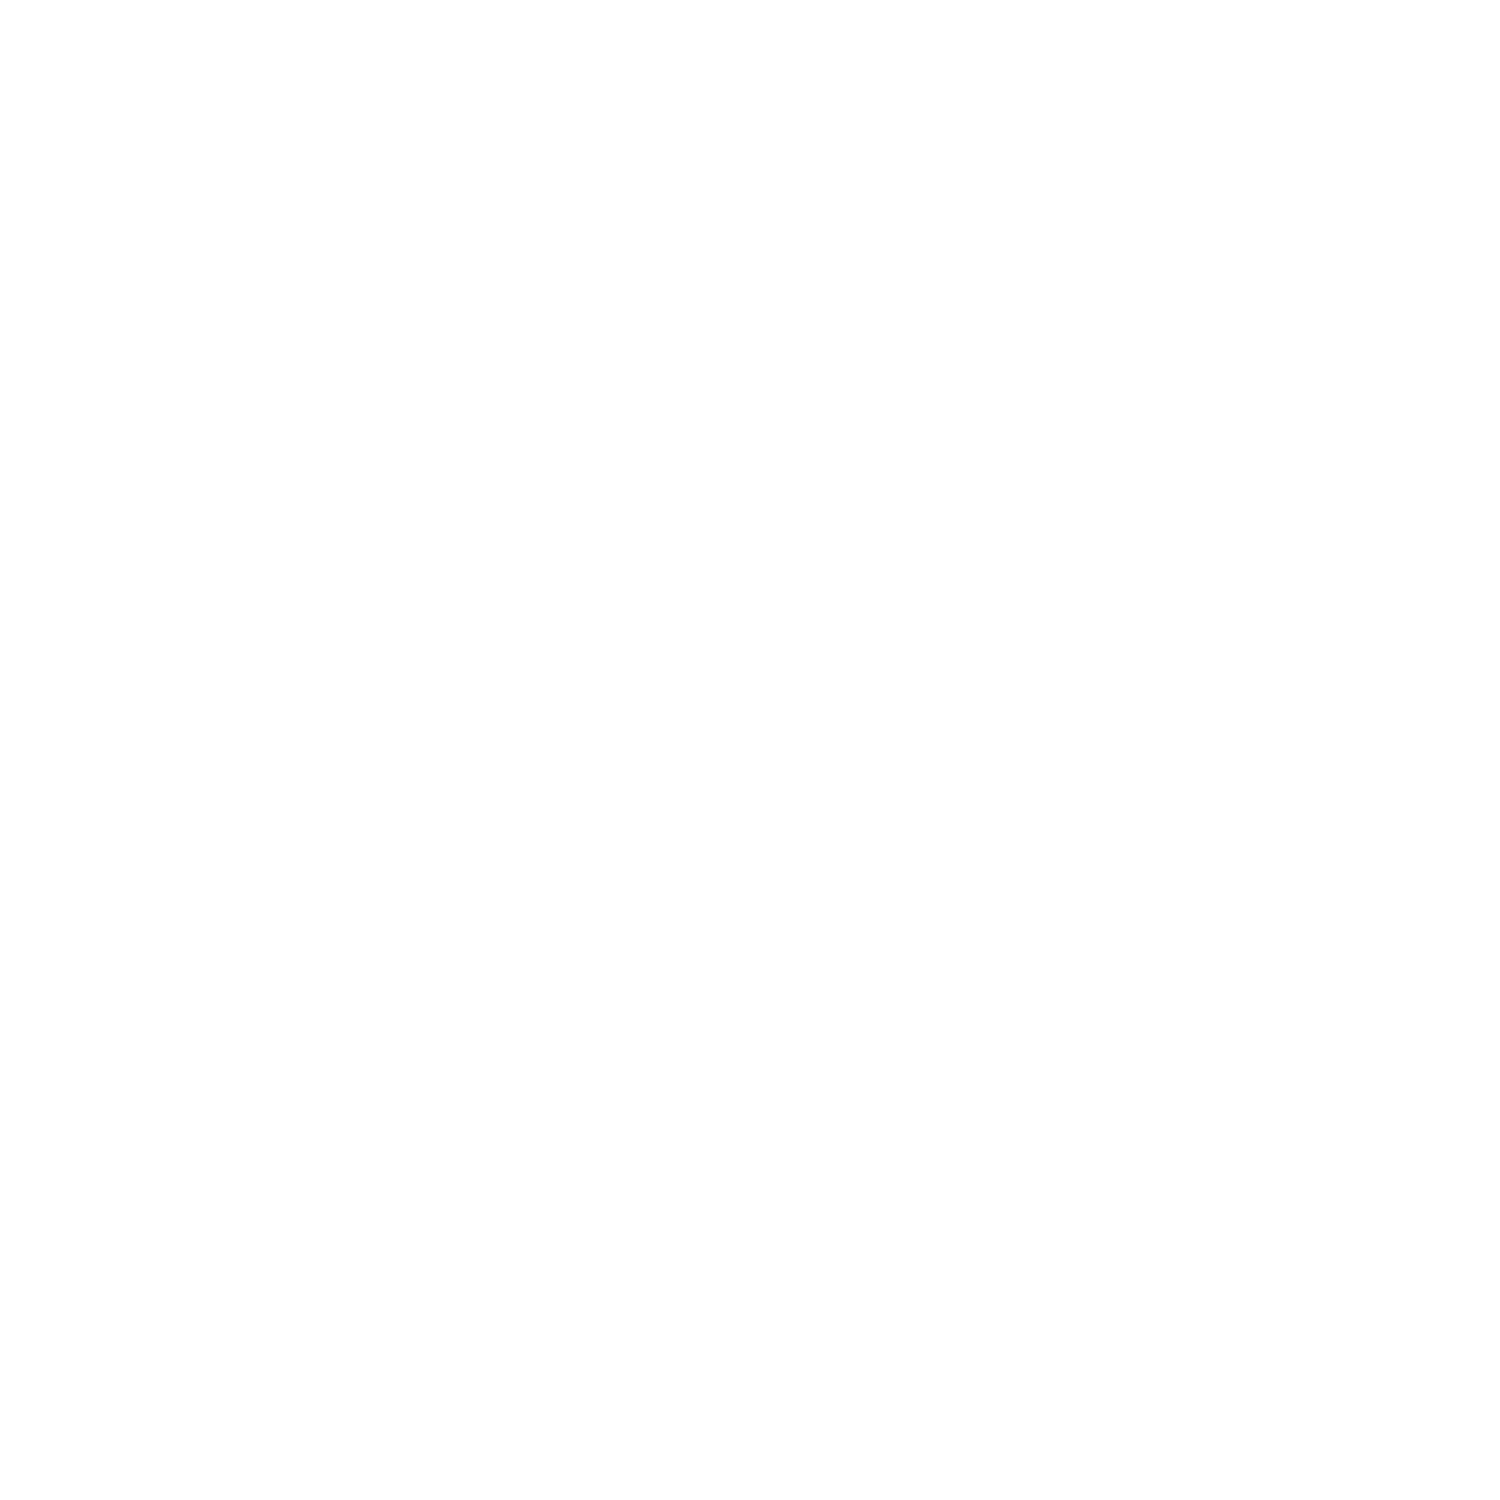 Pearce Danes